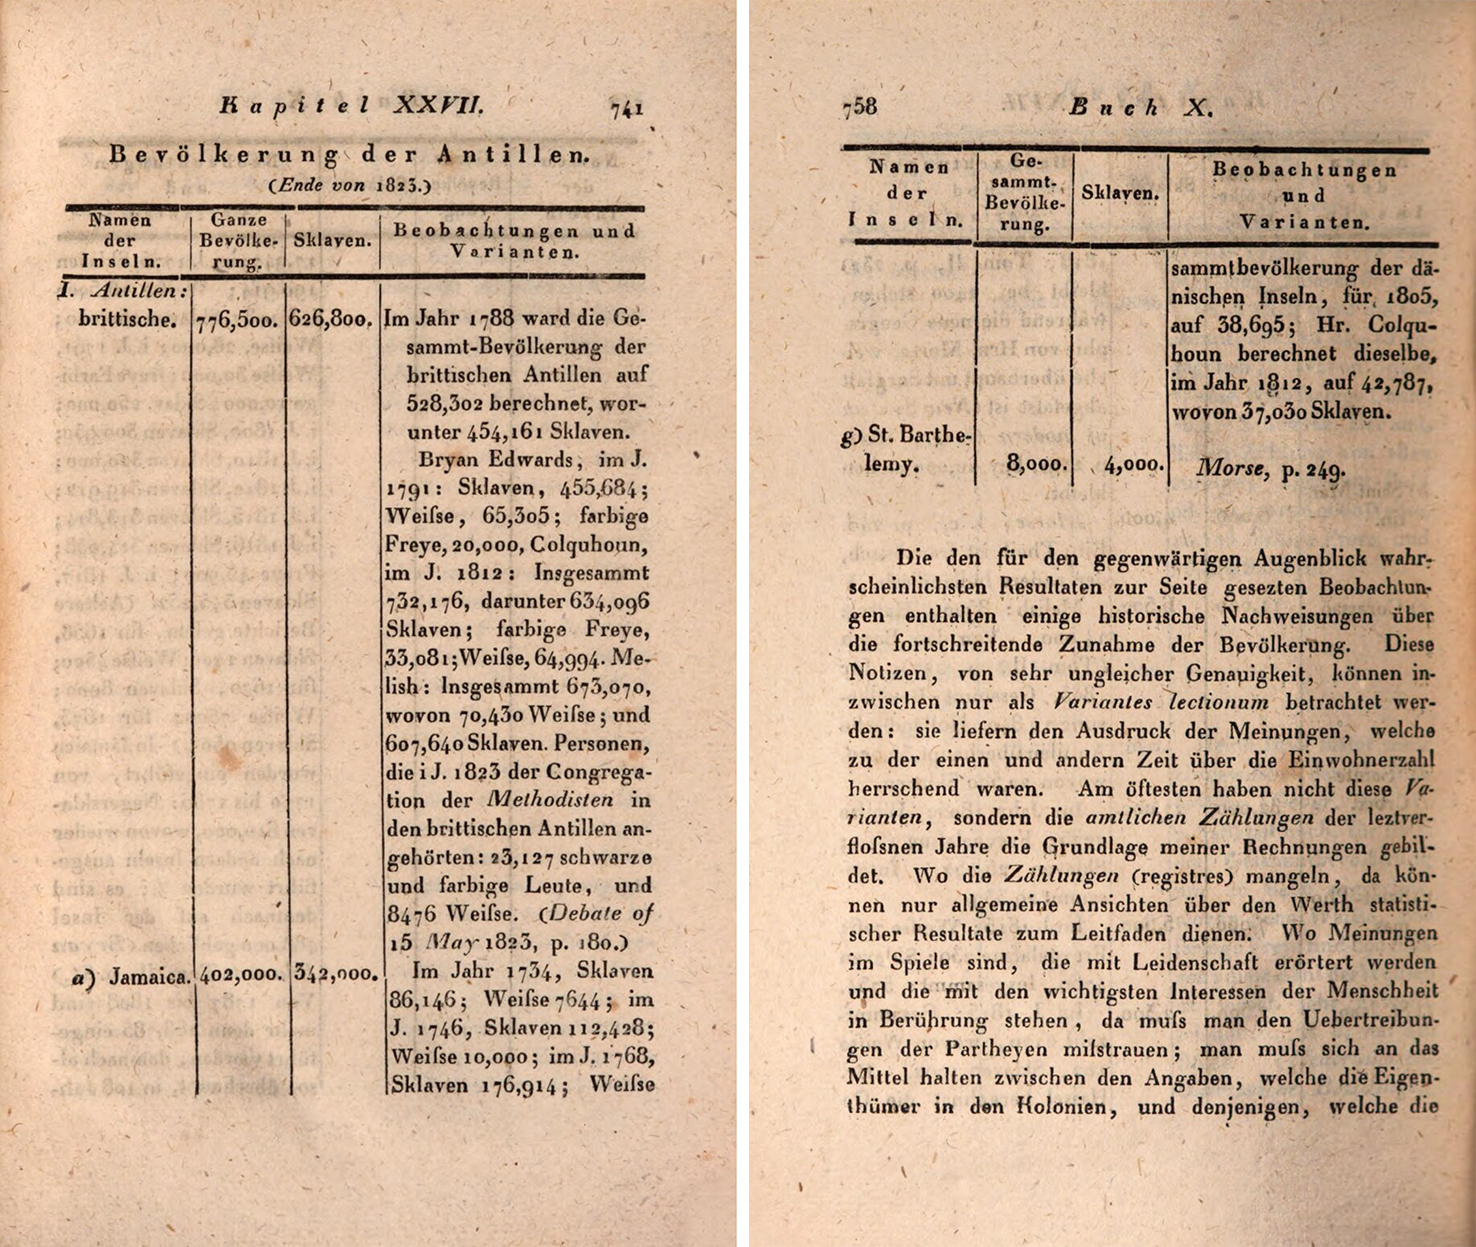 Abbildung 1: Tabelle „Bevölkerung der Antillen“, erste und letzte Seite.